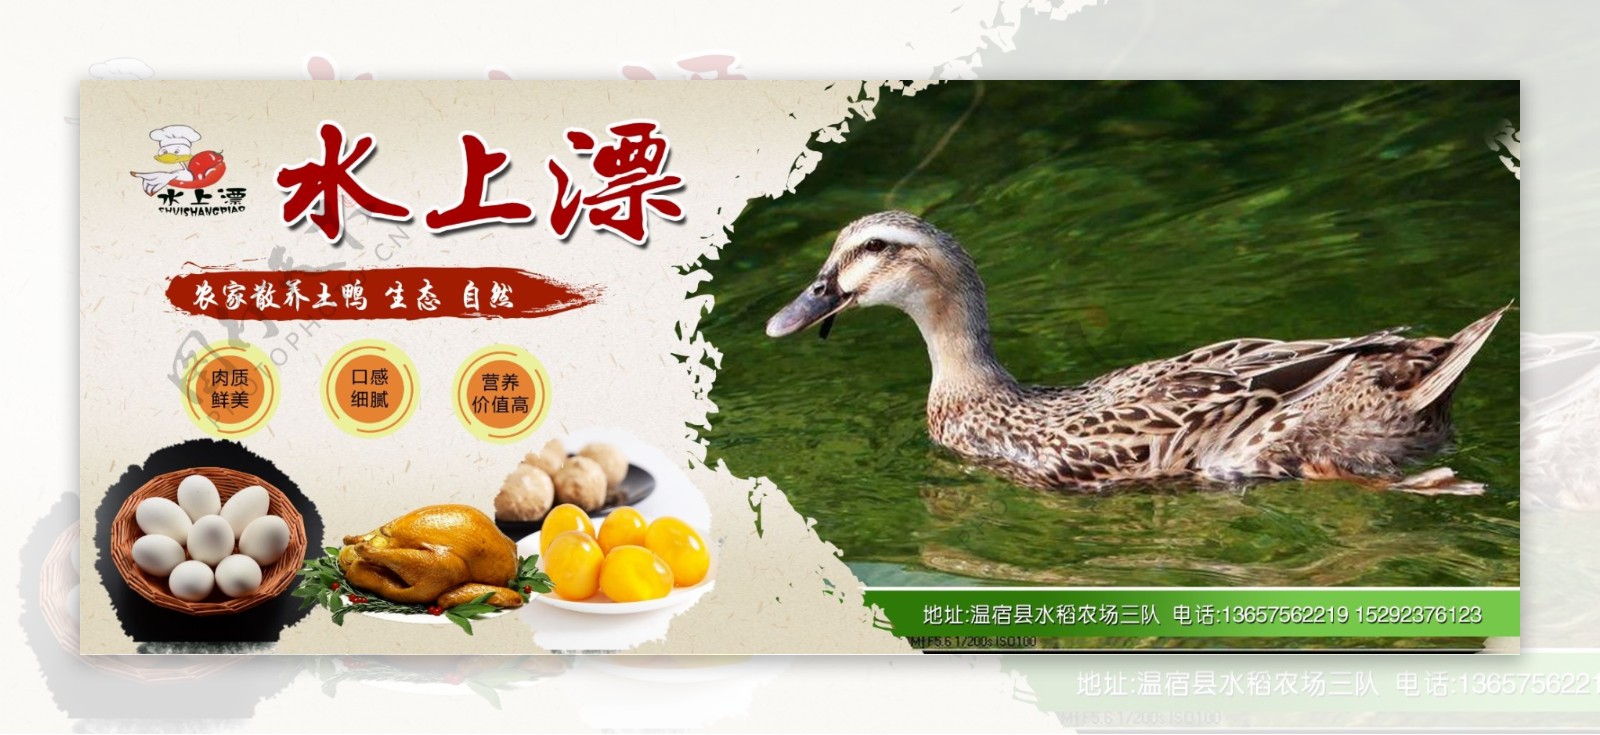 农家乐鸭子鸡农产品宣传